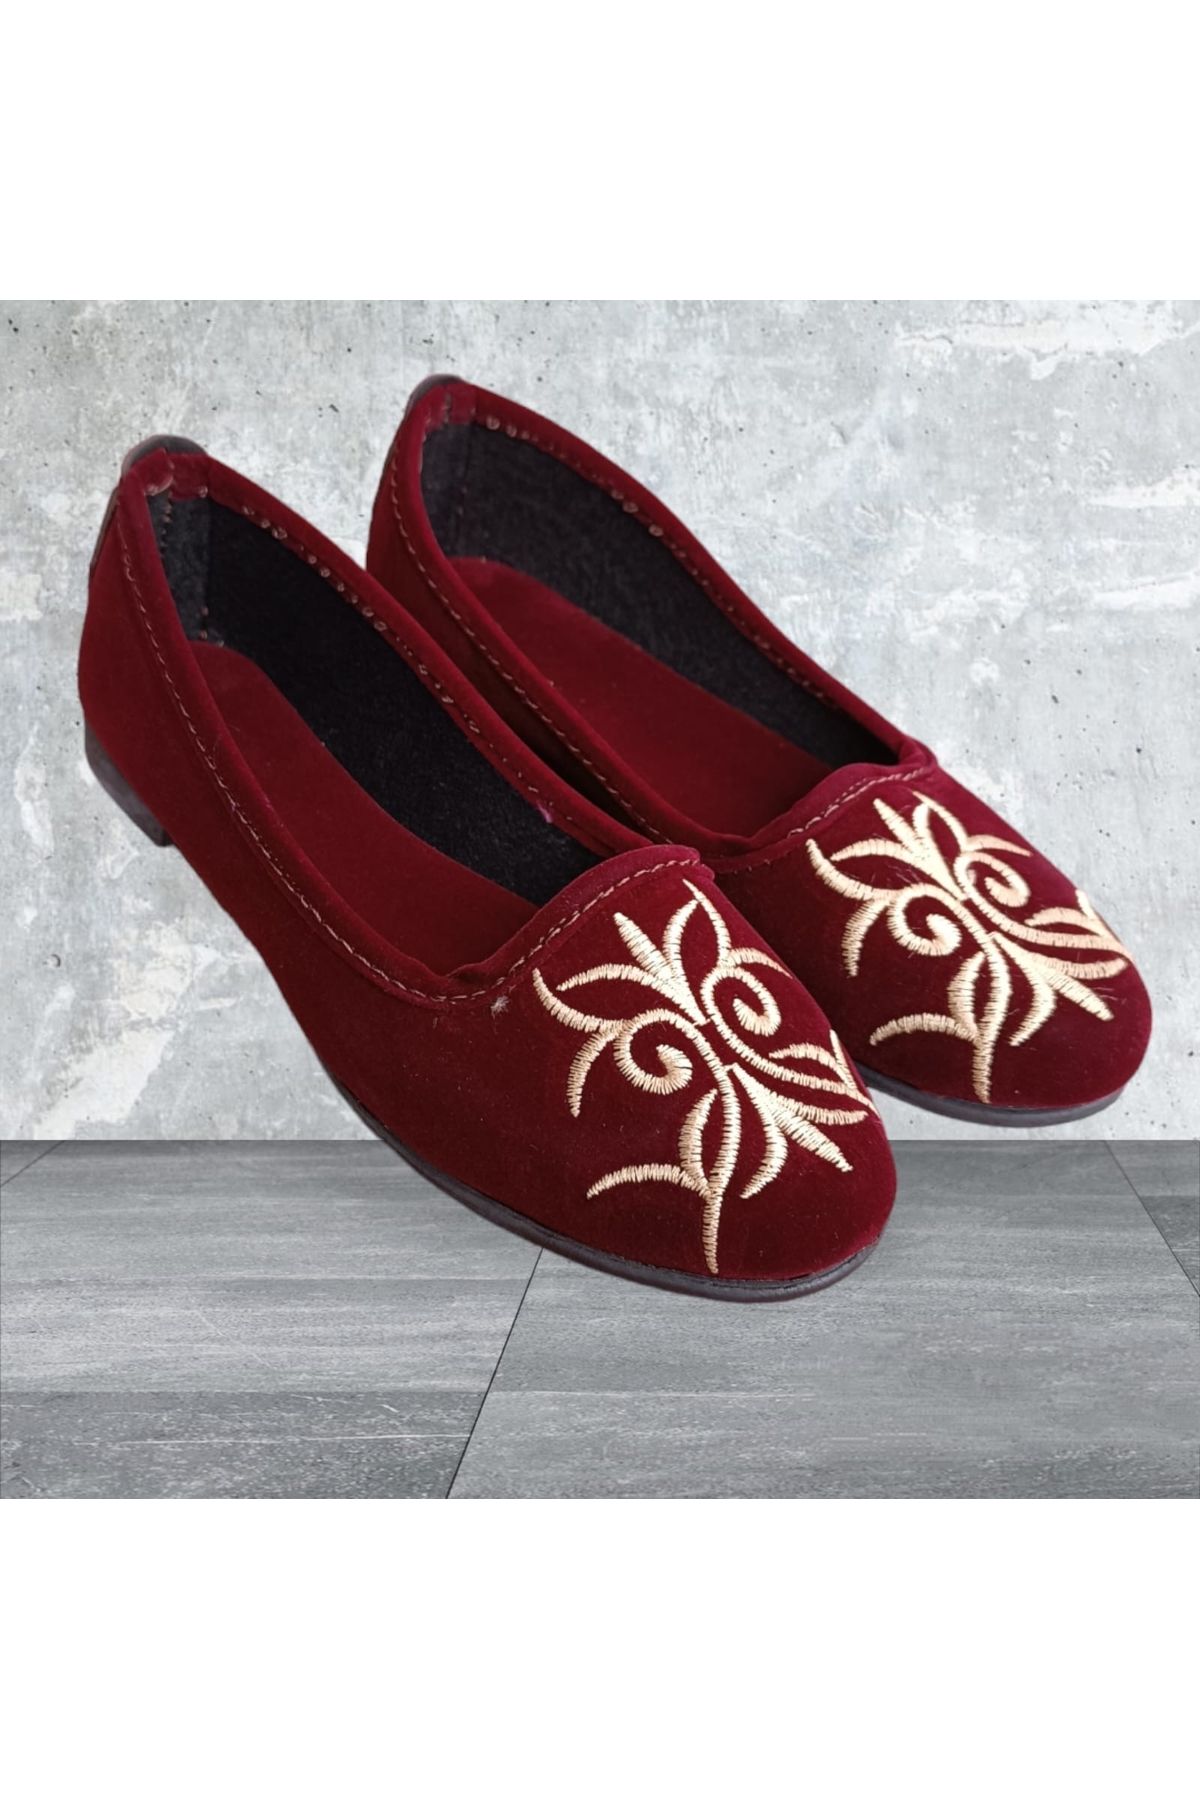 İpek kadın renkli nakışlı hafif ev ayakkabısı ev babeti